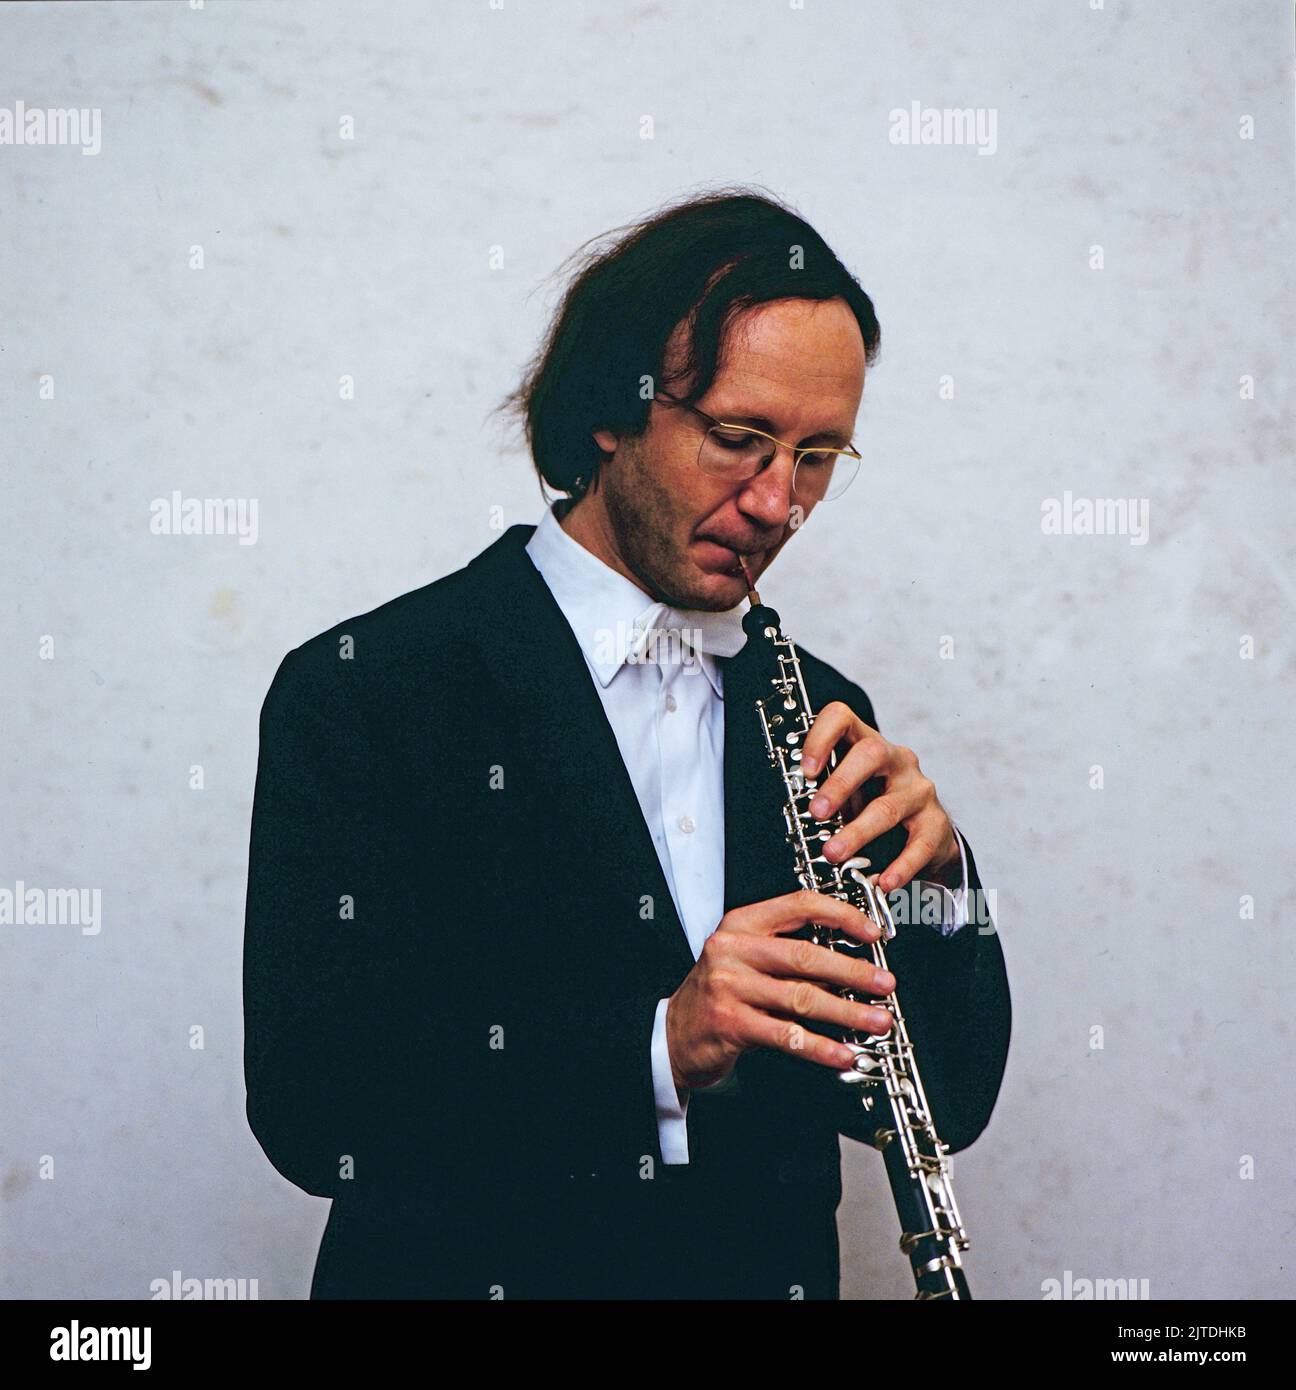 Oboe musician -Fotos und -Bildmaterial in hoher Auflösung - Seite 2 - Alamy